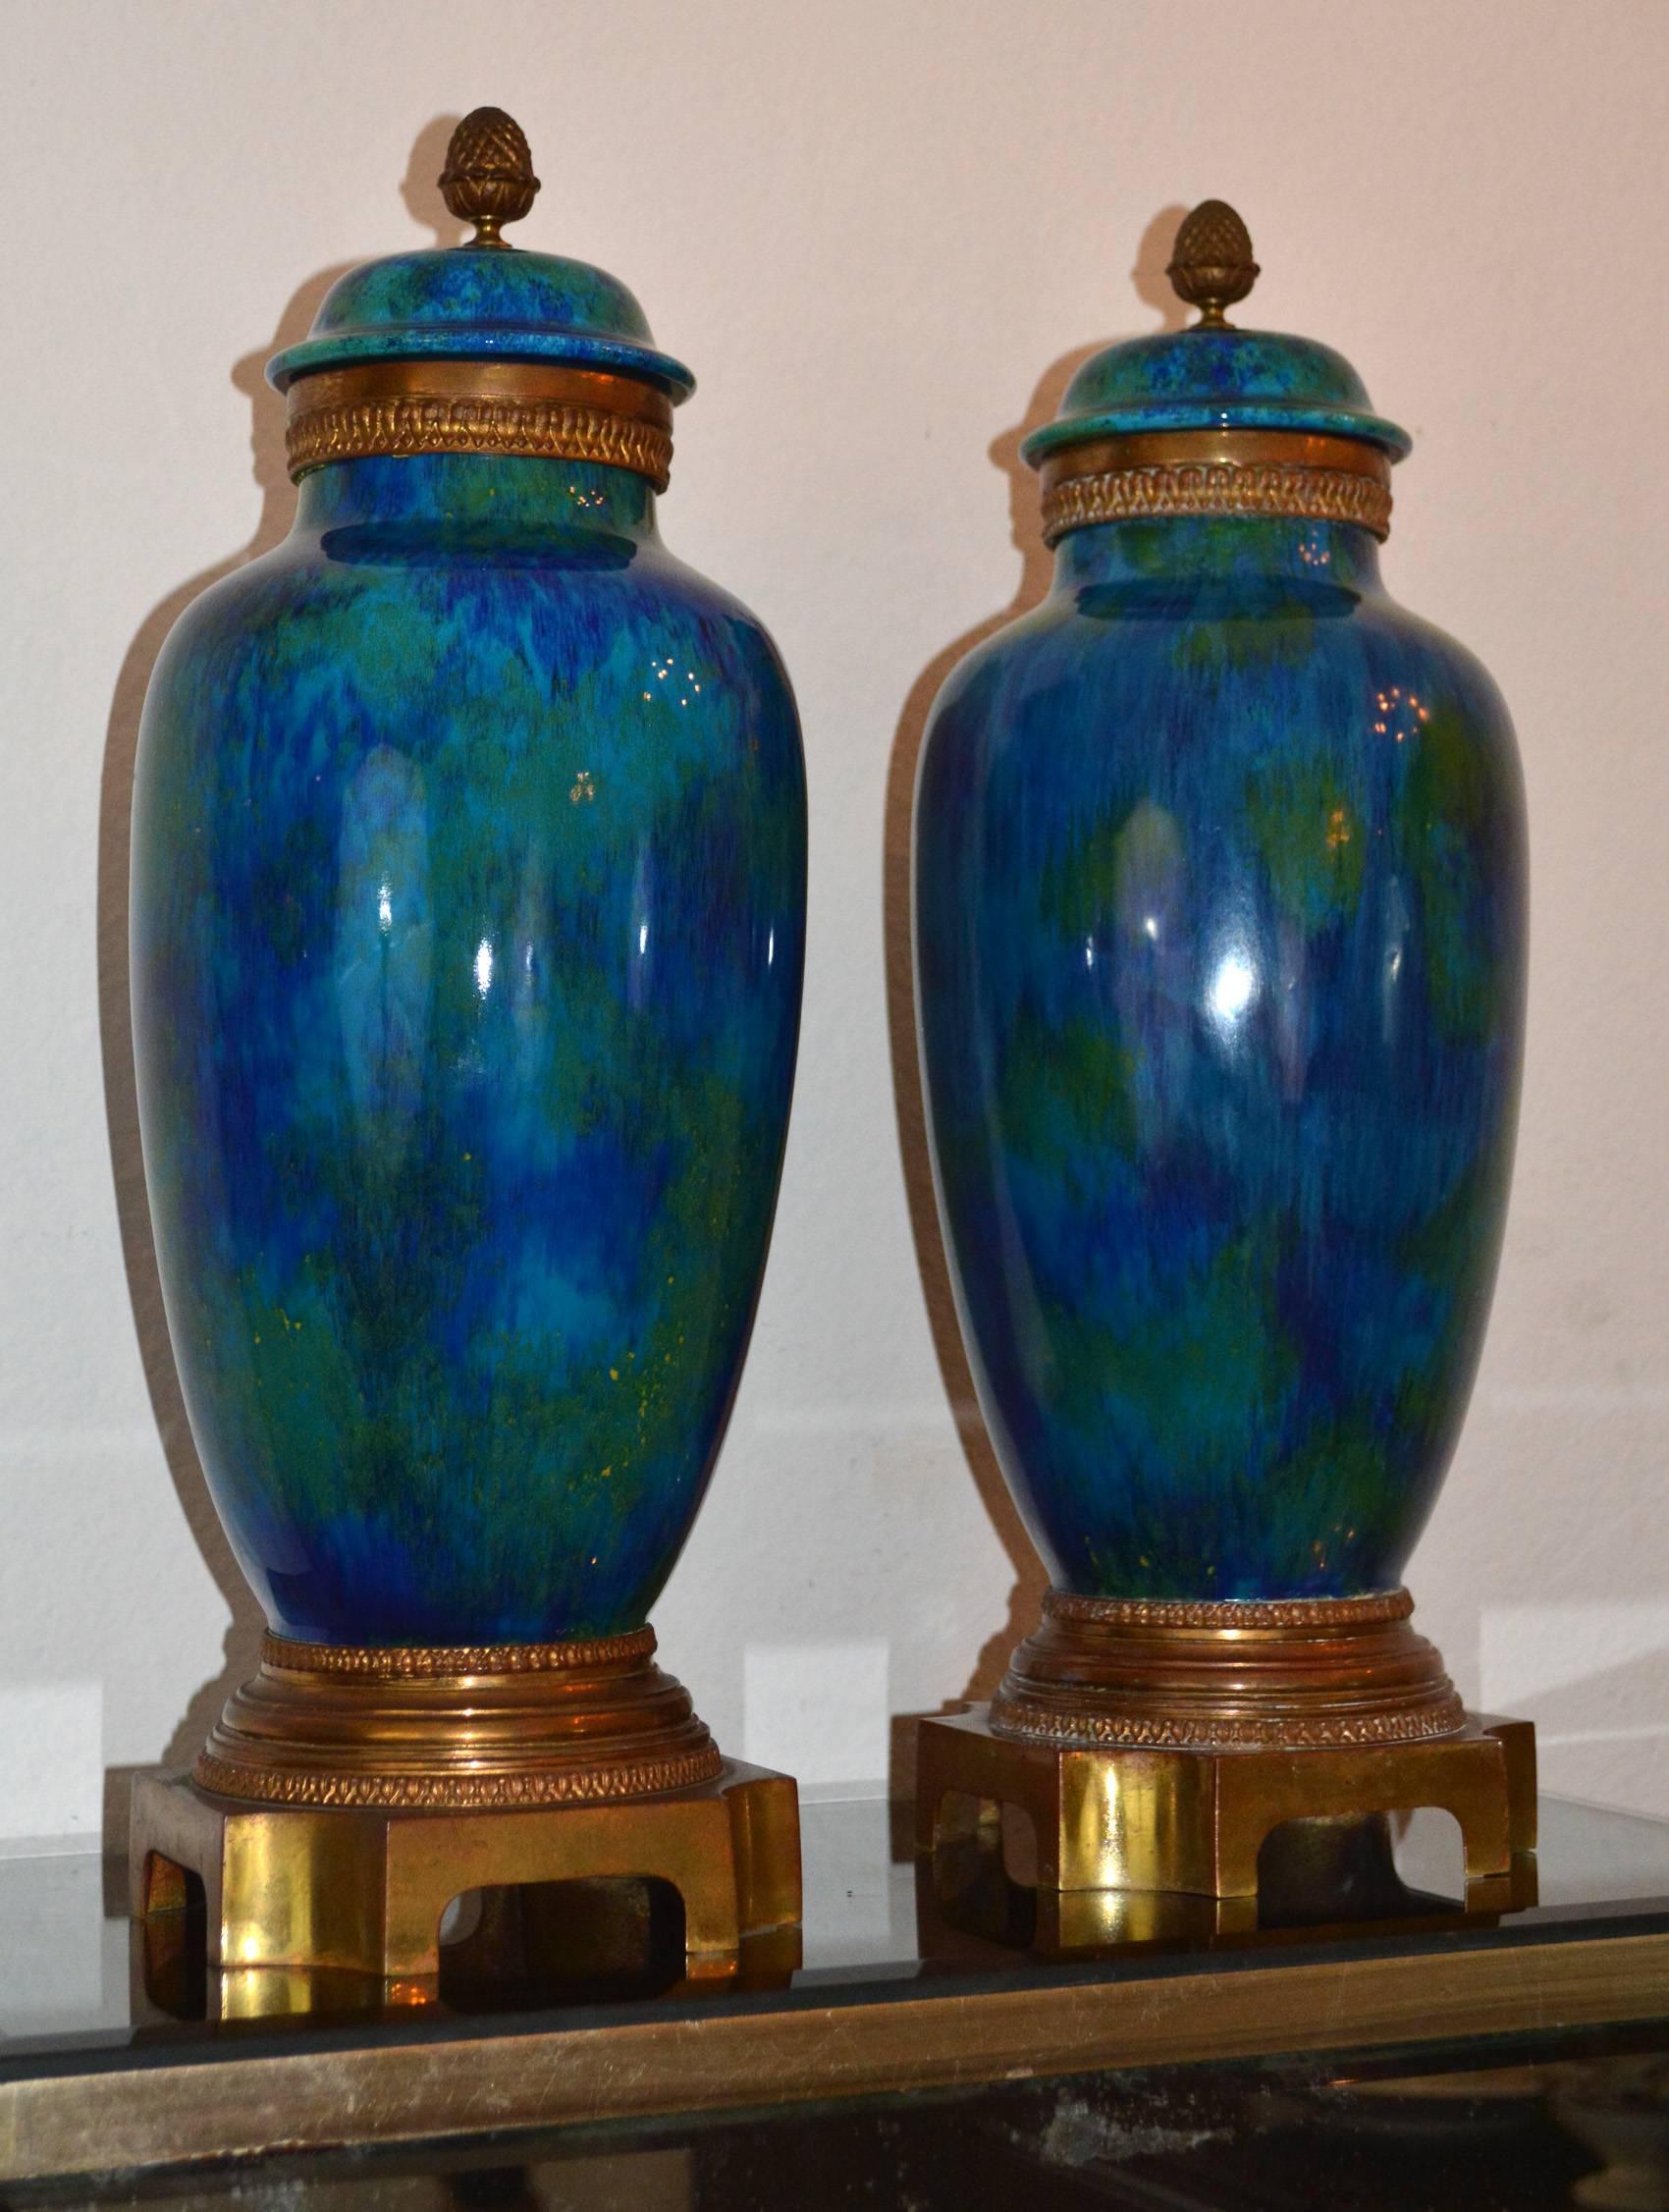 Paire de vases Art Déco de forme balustre avec couvercles. Une belle glaçure dans différents tons de bleu, aqua, vert et or. Le vase repose sur des pieds en bronze doré et est marqué C.H. Sèvres. Ces vases sont un exemple rare et très fin de l'Art